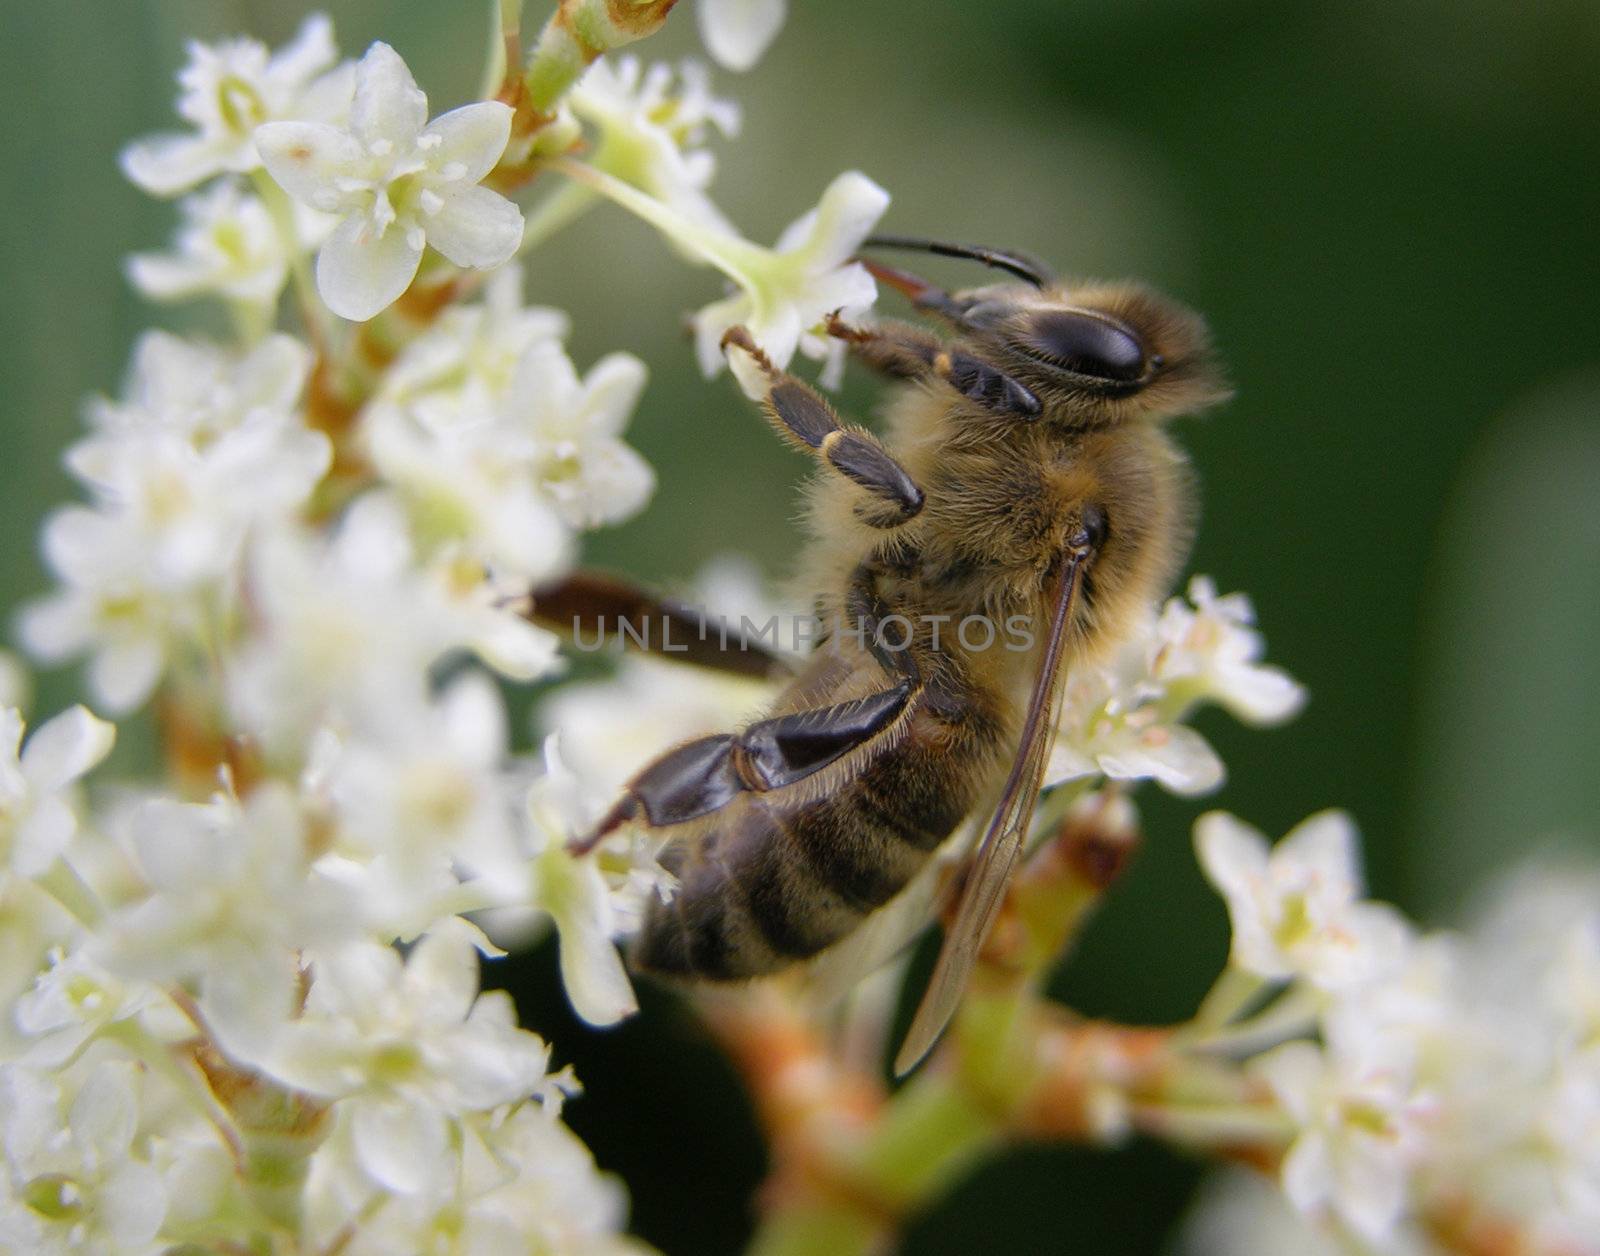 Bee on flower by rbiedermann